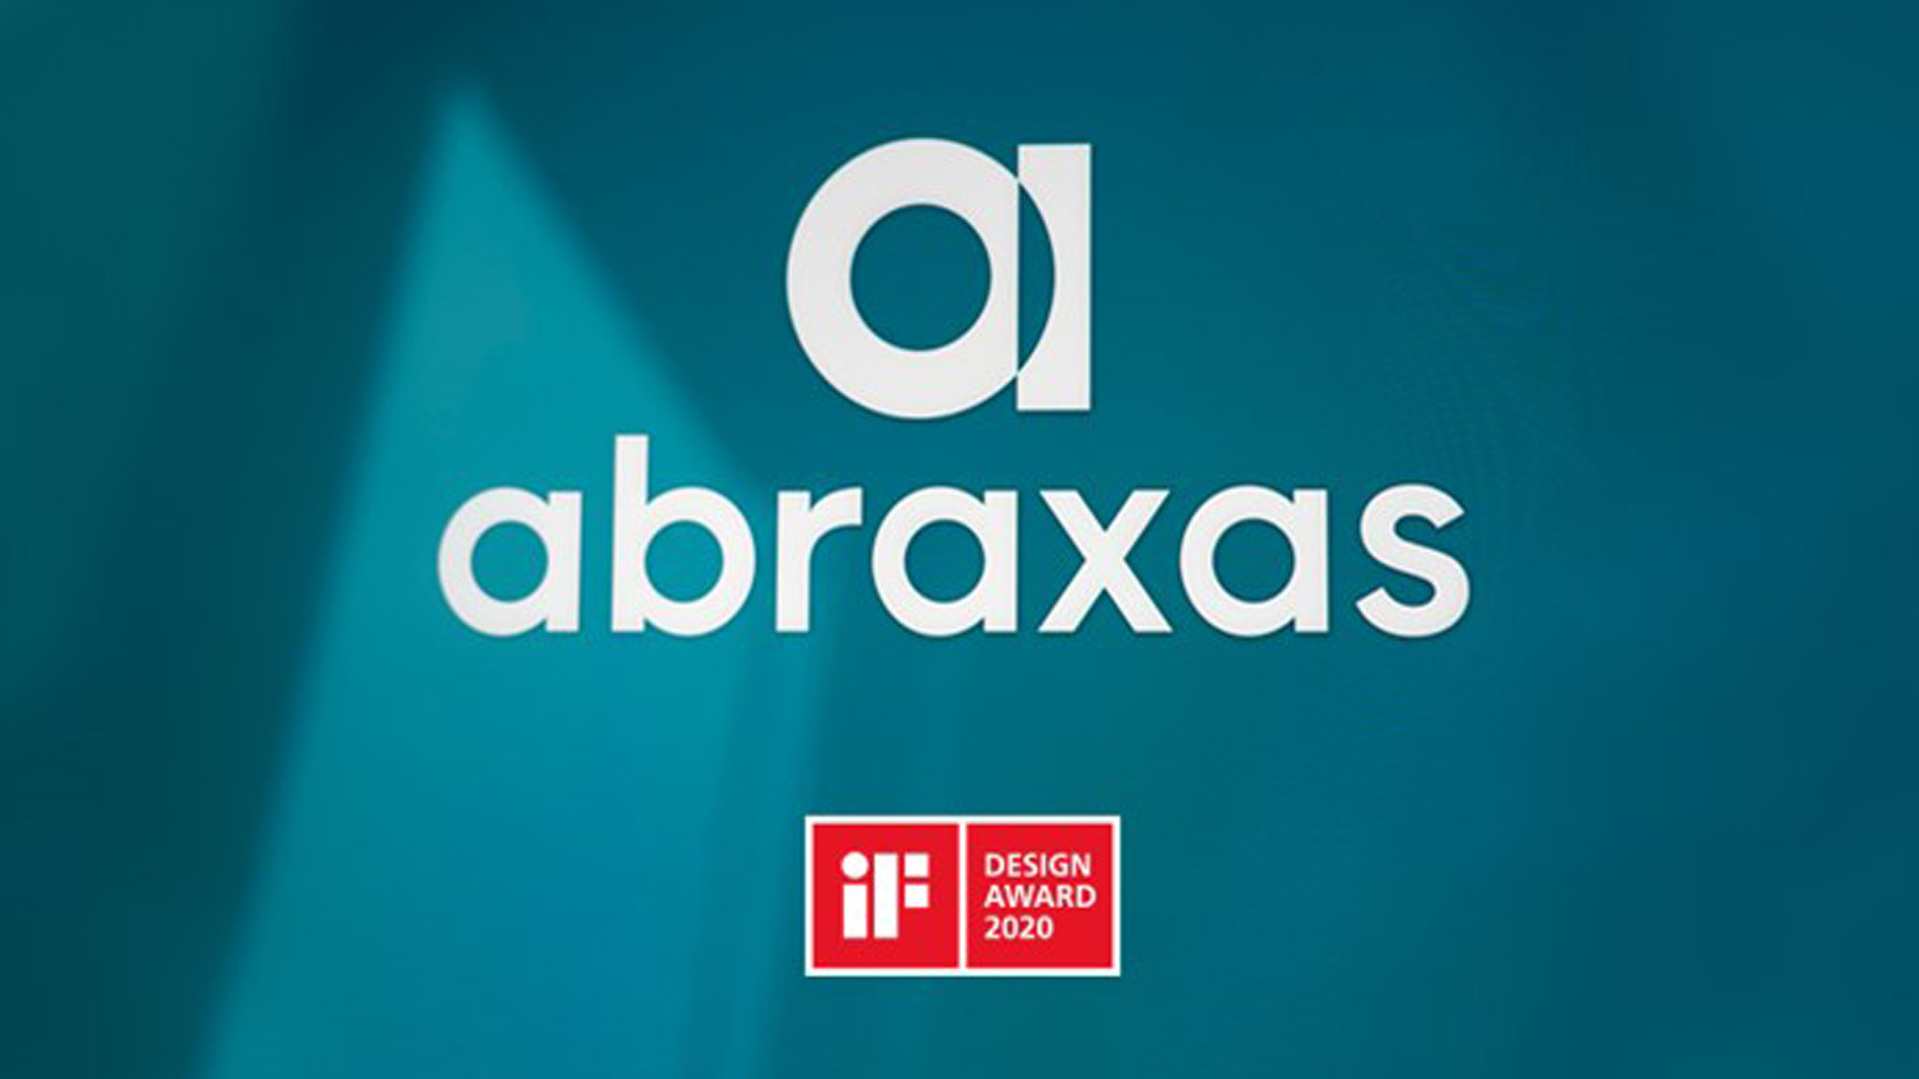 Markenauftritt von Abraxas wird ausgezeichnet